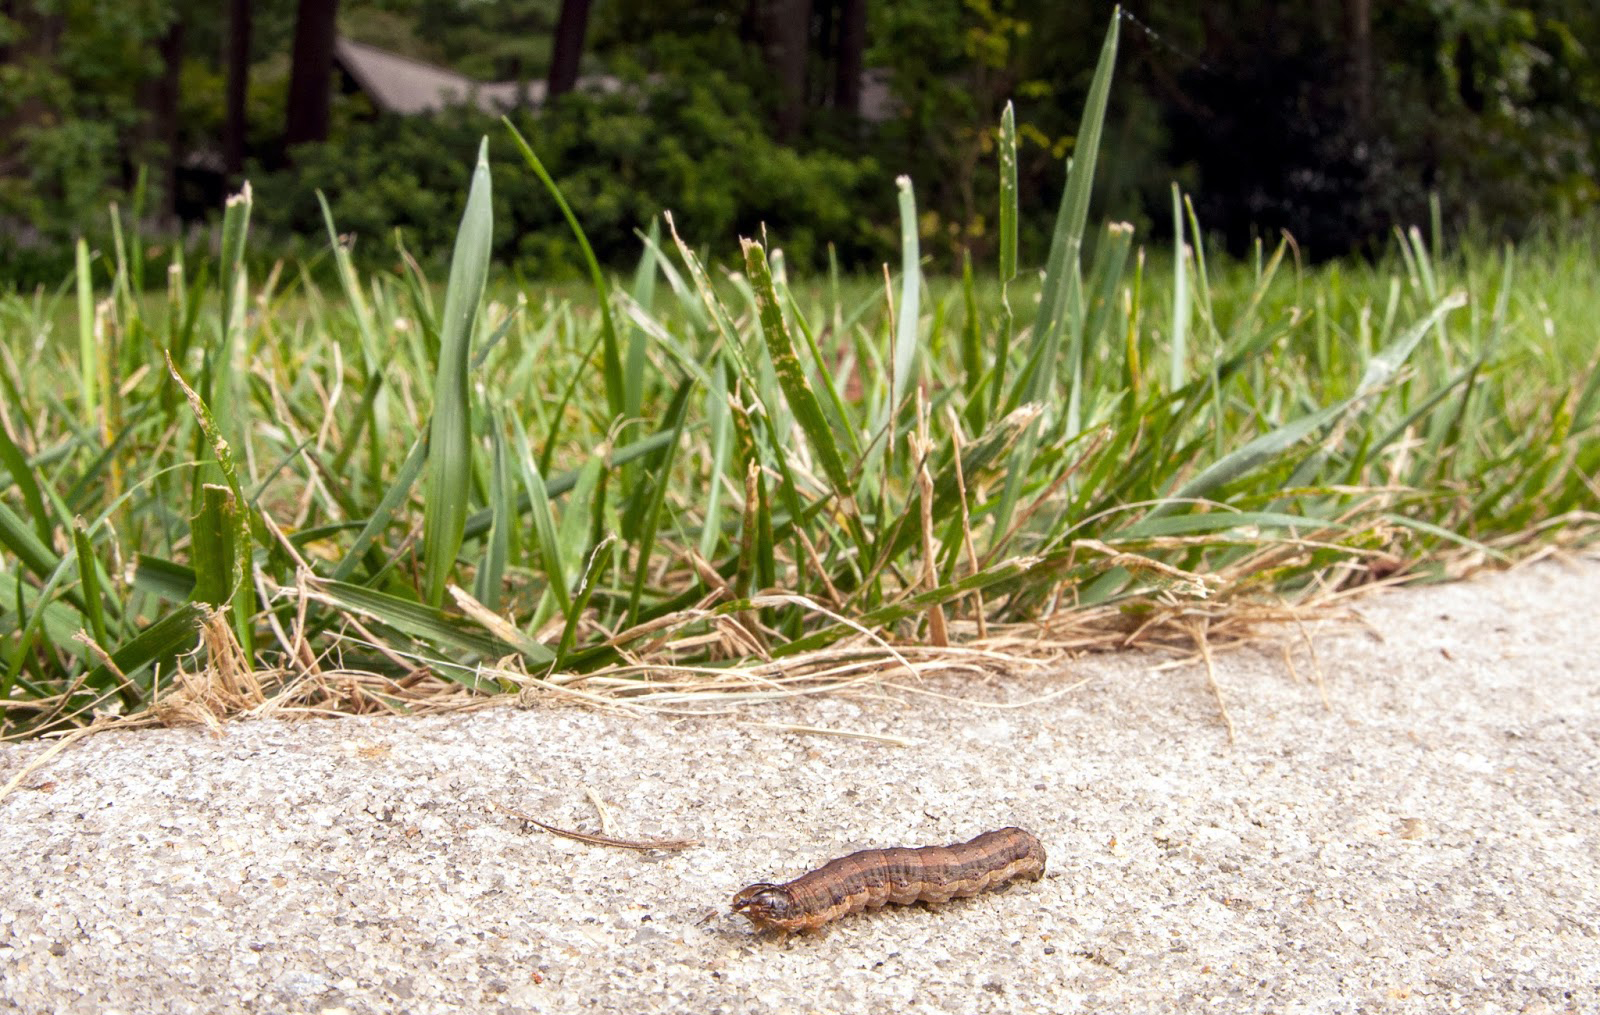 Armyworm on a sidewalk lawn.